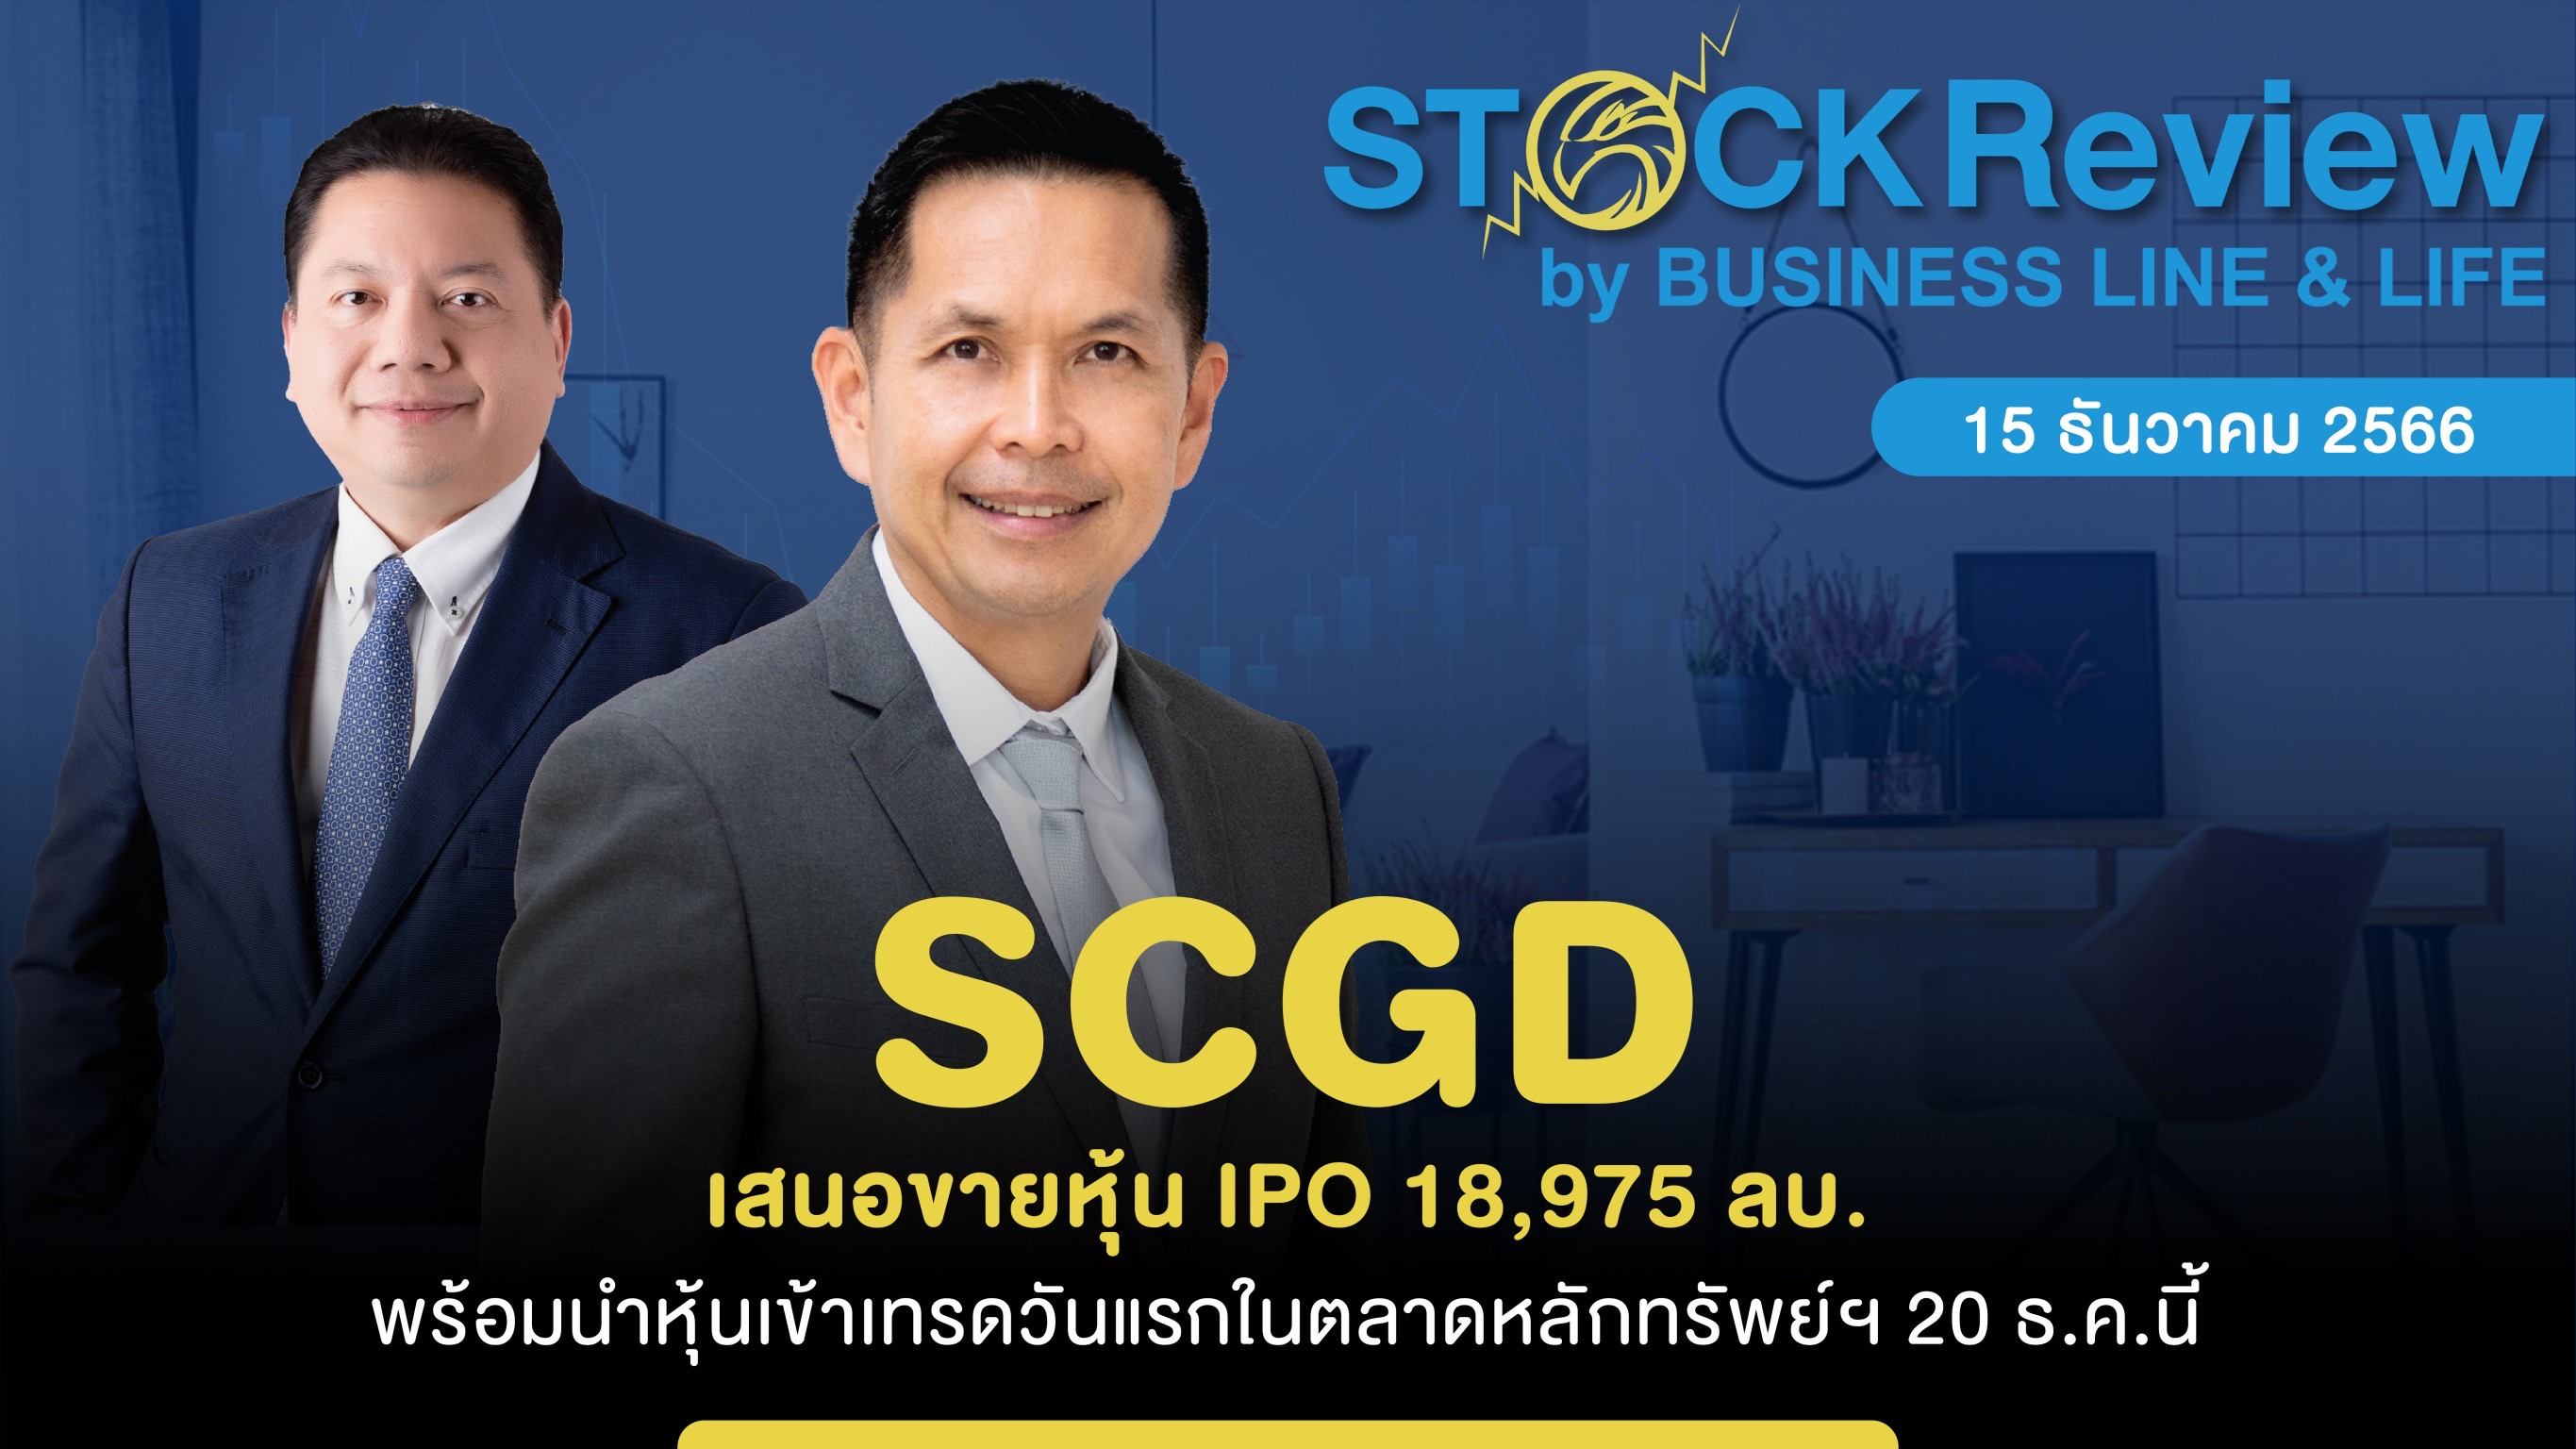 SCGD เสนอขายหุ้น IPO 18,975 ลบ. พร้อมนำหุ้นเข้าเทรดวันแรกในตลาดหลักทรัพย์ฯ 20 ธ.ค.นี้